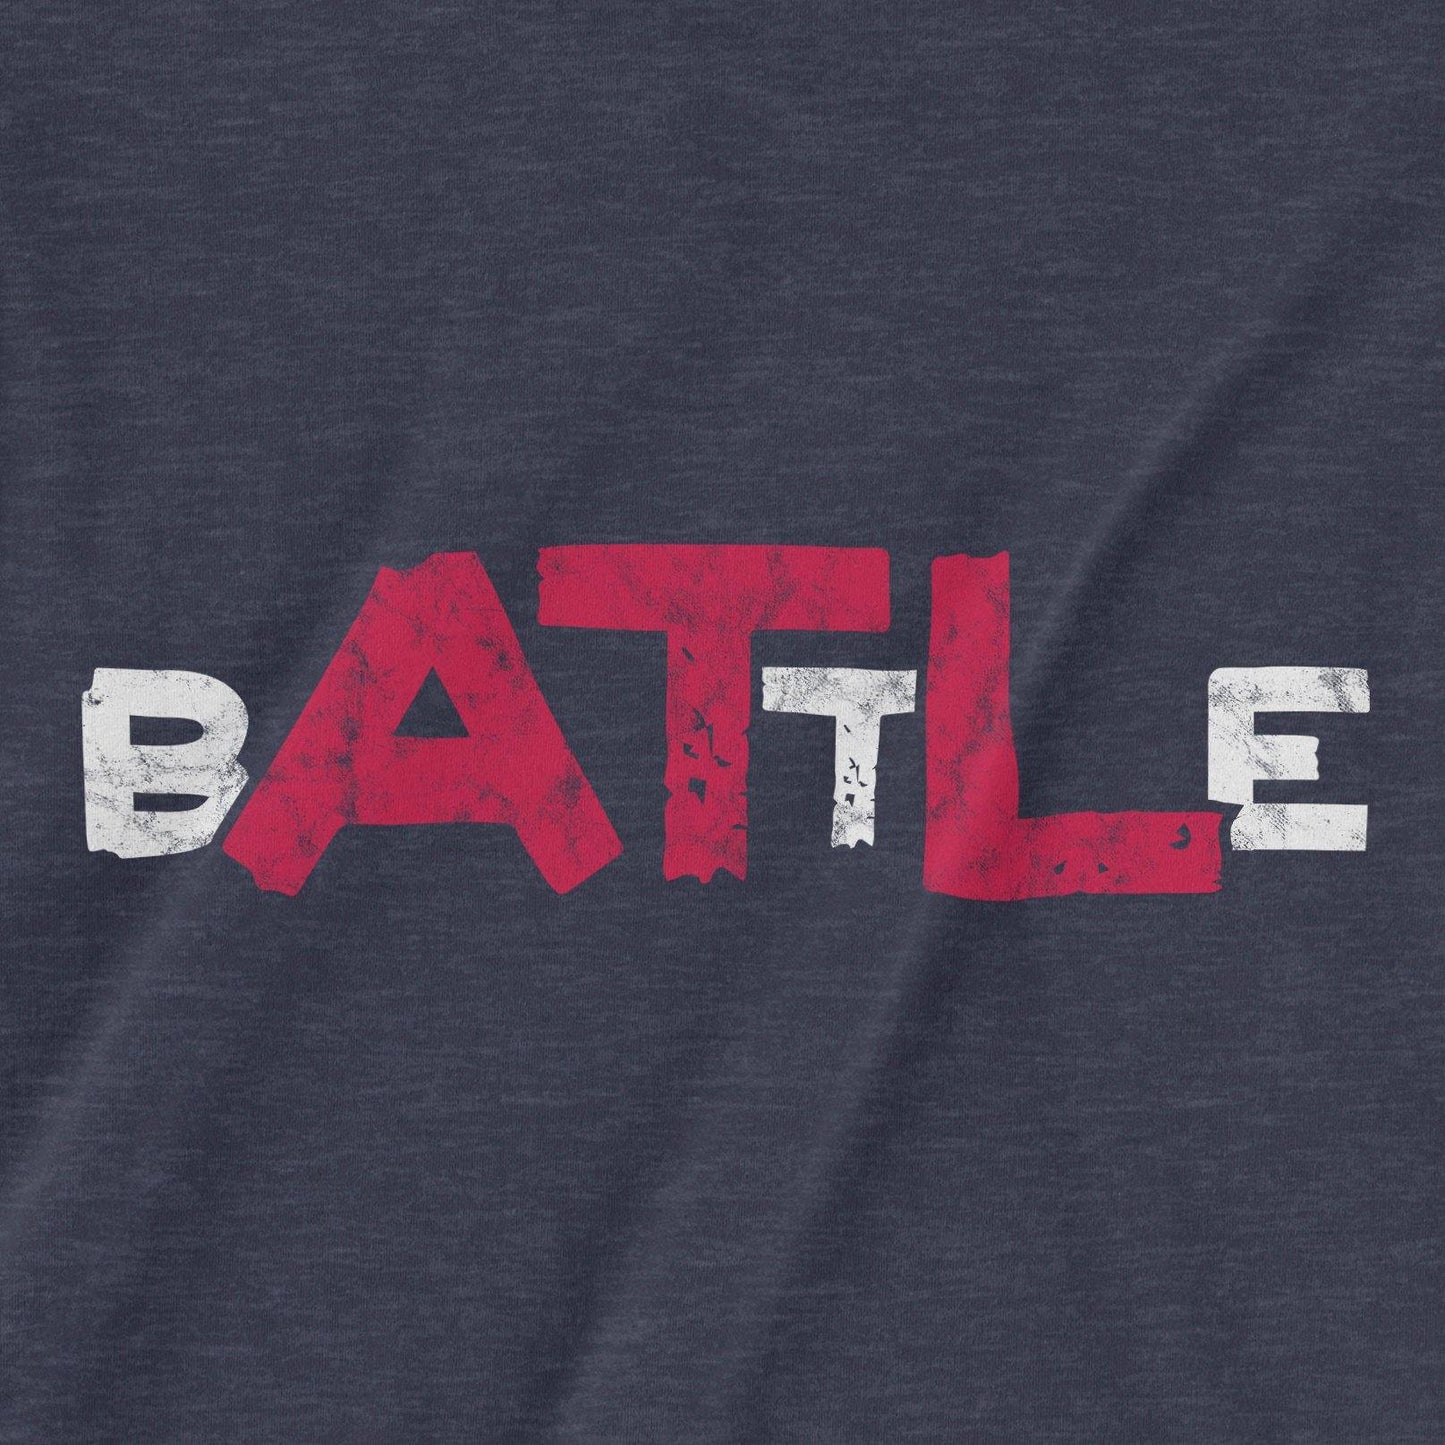 BATTLE | T-Shirt - Jomboy Media